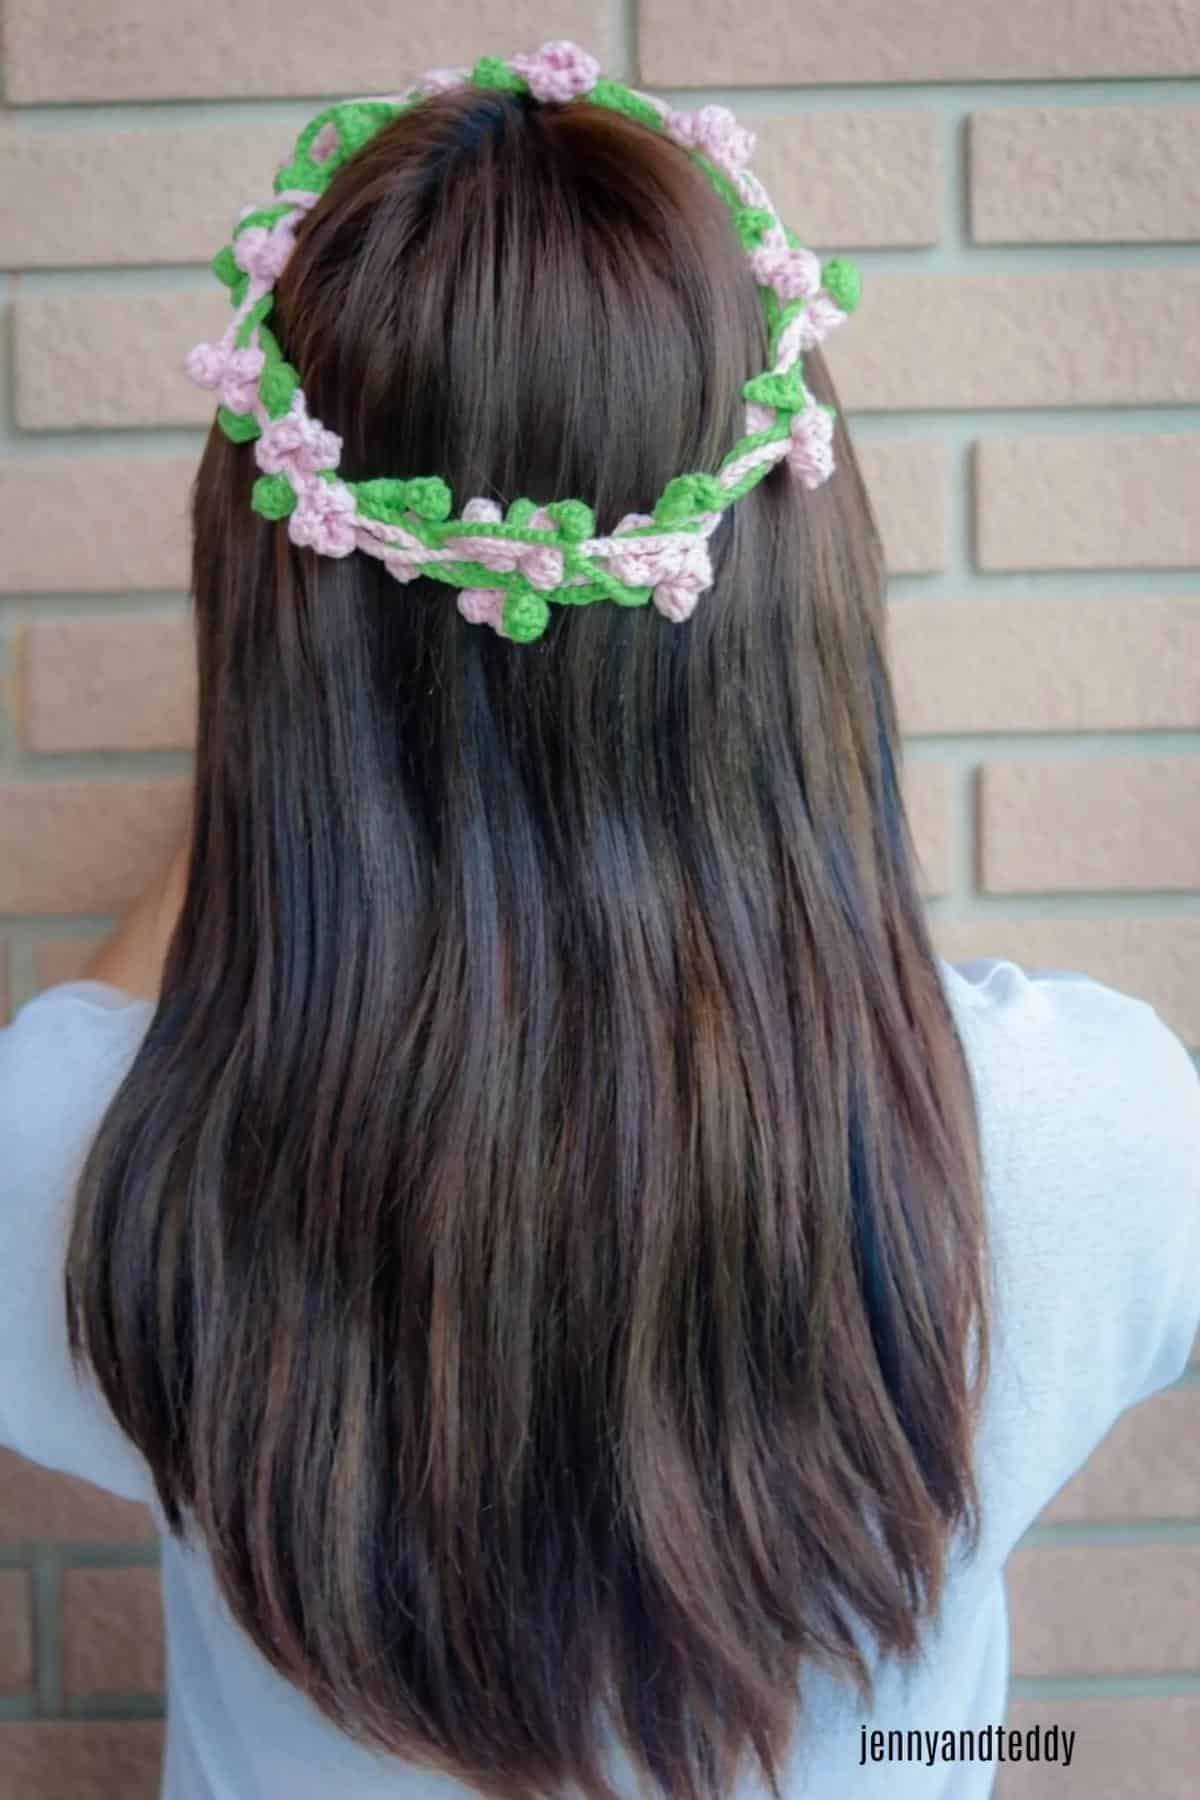 Delia Crochet Flower Crown